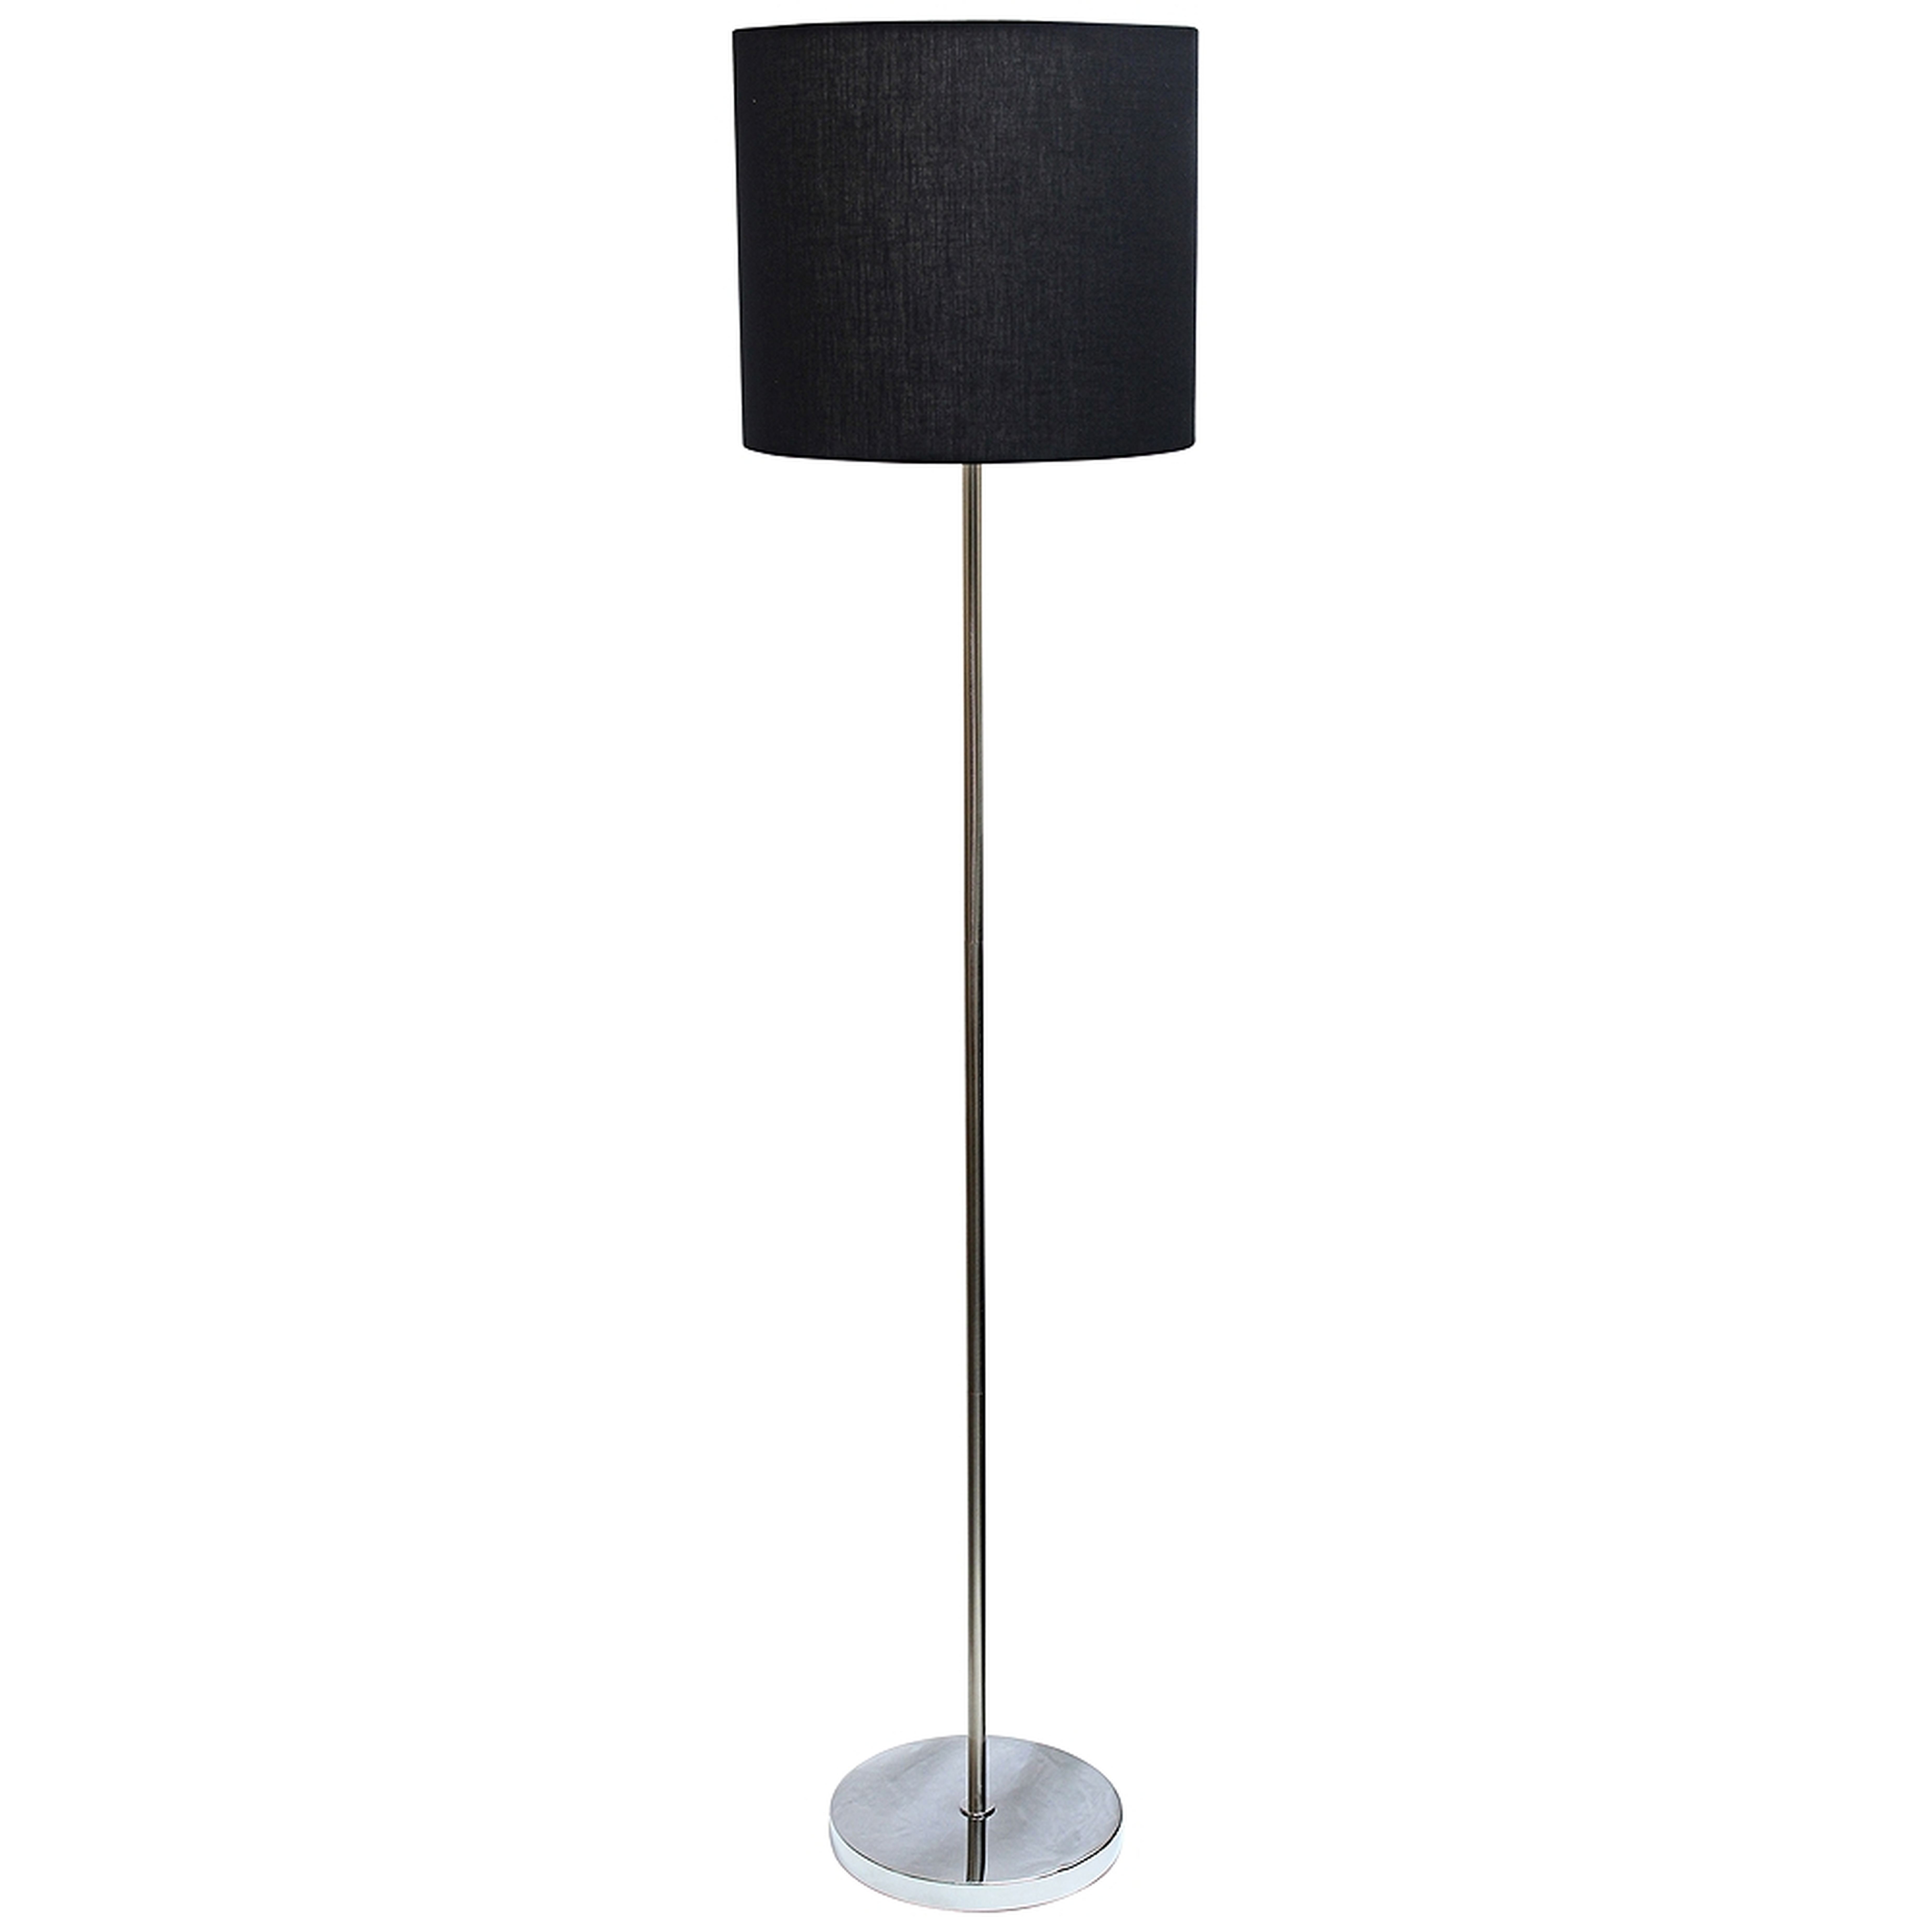 Analisa Brushed Nickel and Black Shade Floor Lamp - Style # 35N96 - Lamps Plus